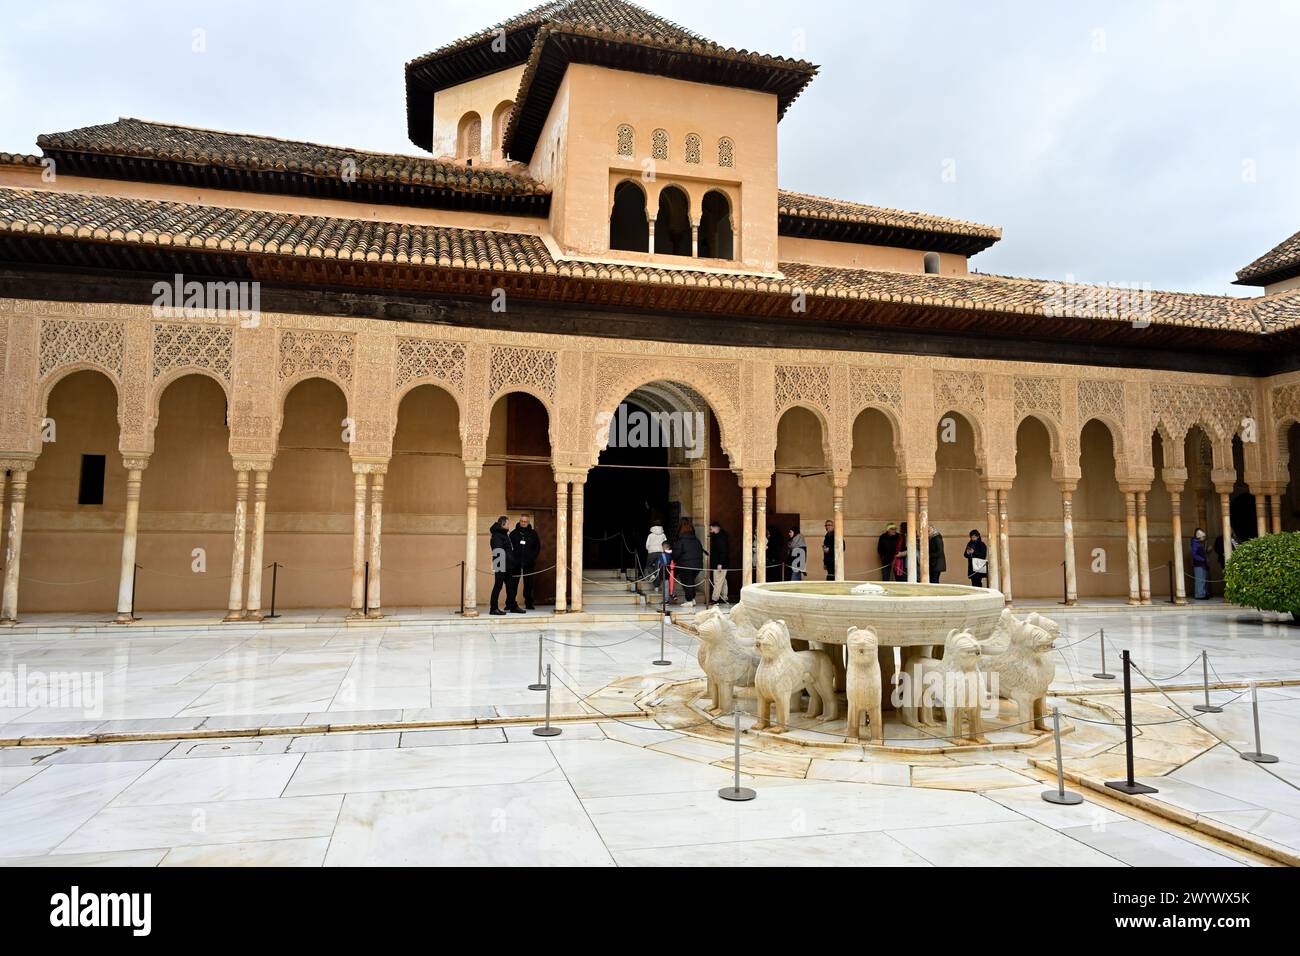 Regardant à travers la Cour des Lions avec des arches de style mauresque, Palais Nasrides, Palais de l'Alhambra, Grenade, Espagne Banque D'Images